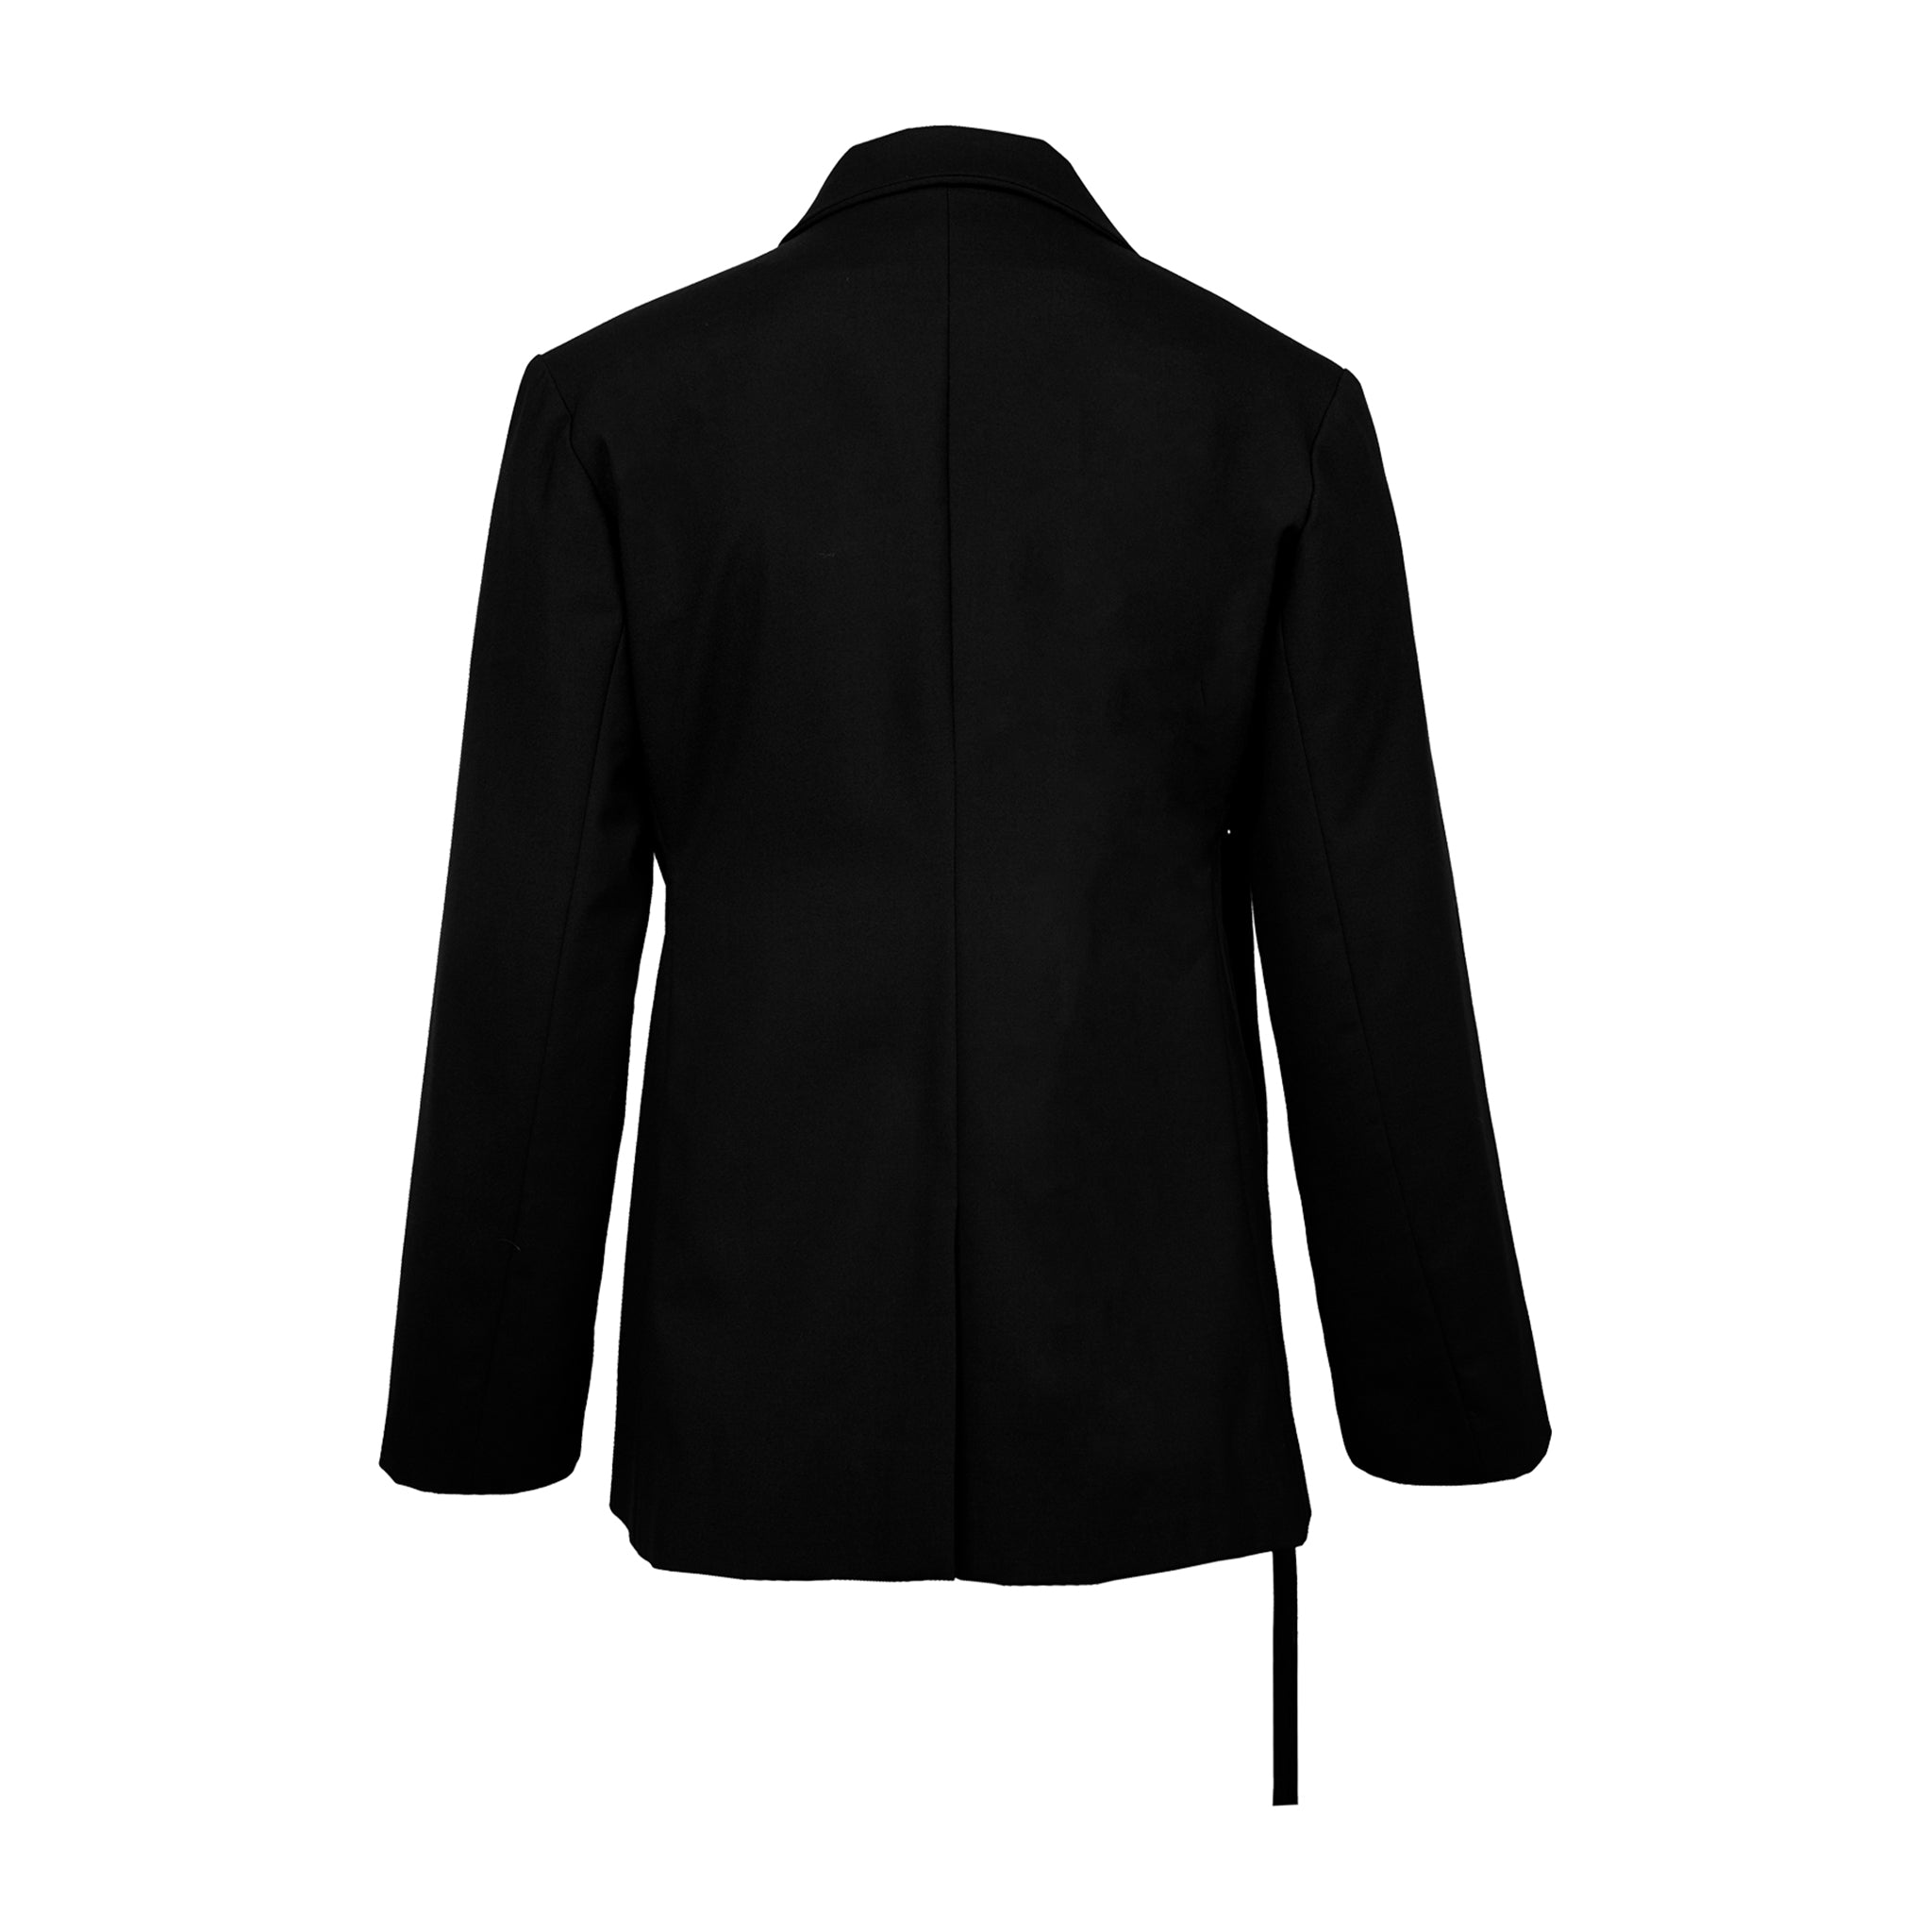 Deconstructed Double-Layer Lapel Suit Jacket - Avant Gardist